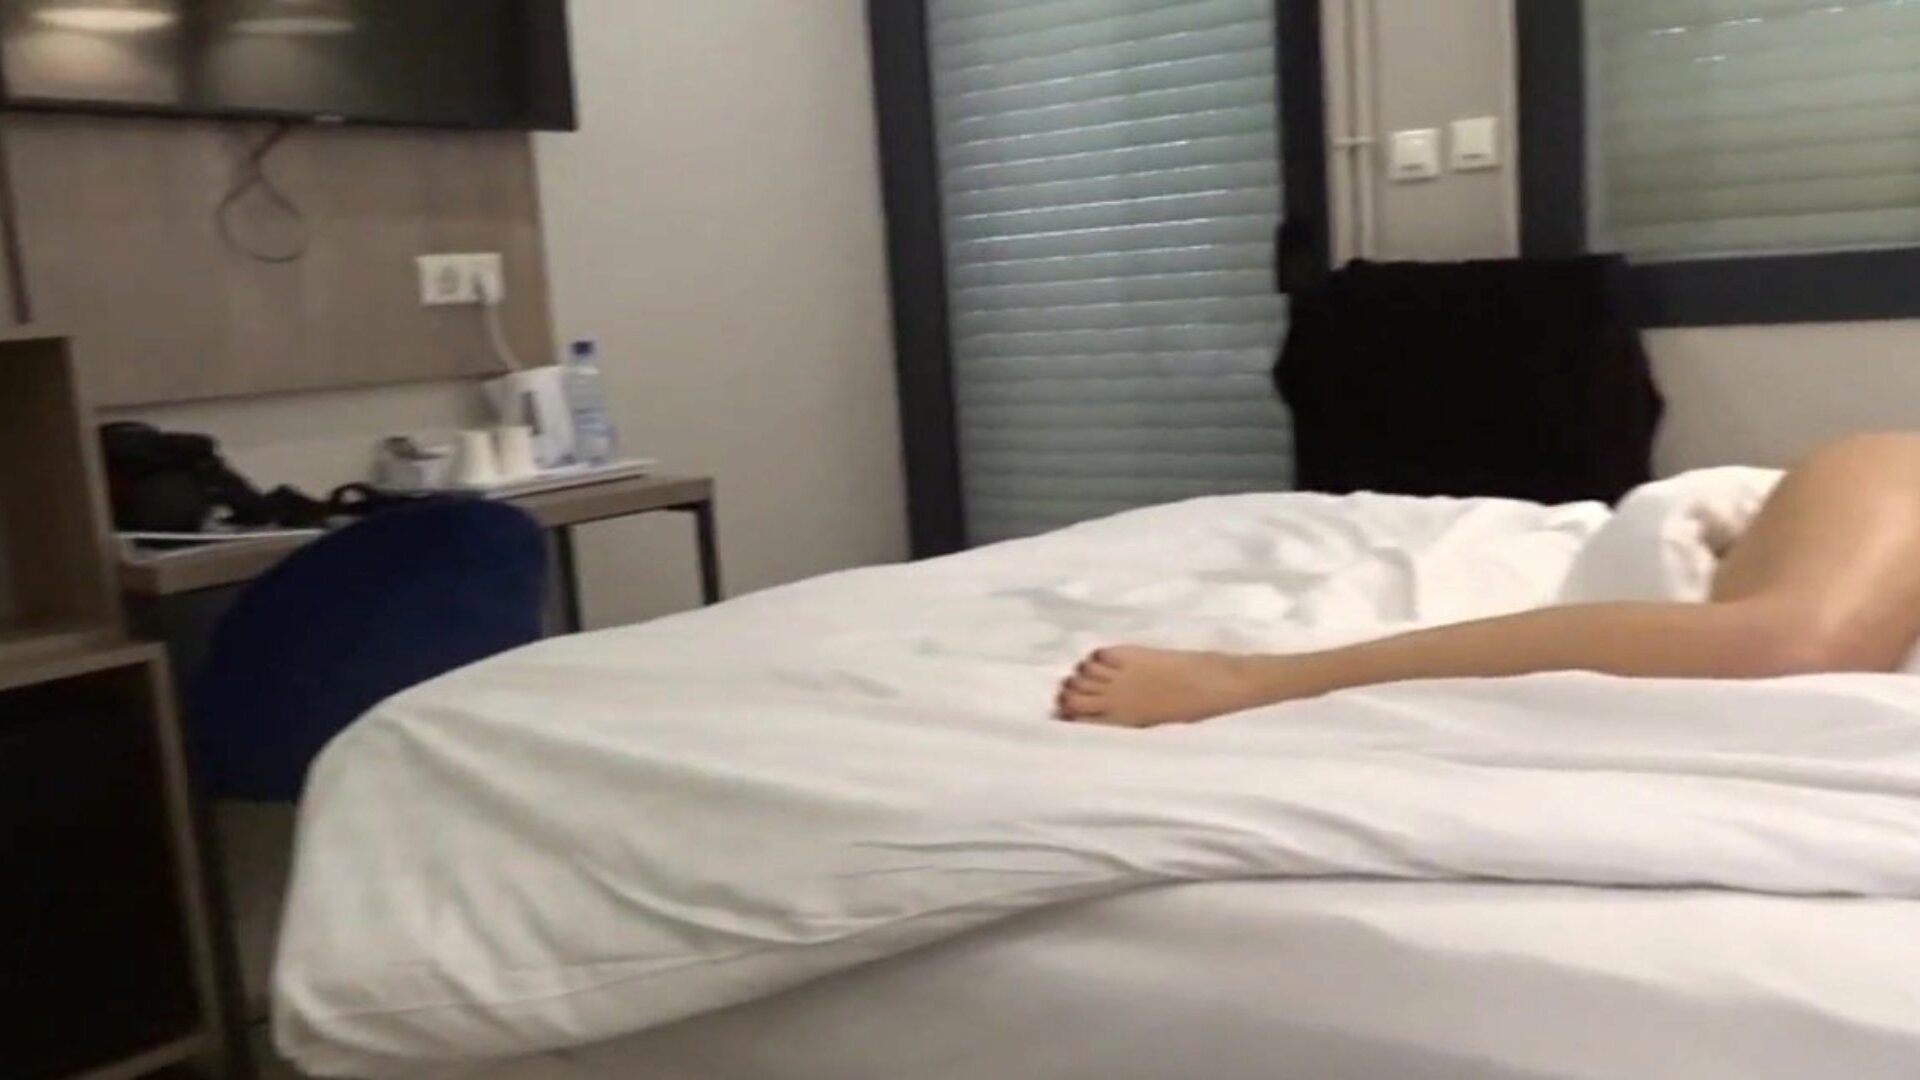 carla-c γυμνό στο βίντεο του ξενοδοχείου όπου είμαι γδύσιμο στο ανάκλιντρο σε ένα δωμάτιο ξενοδοχείου και στο μπάνιο